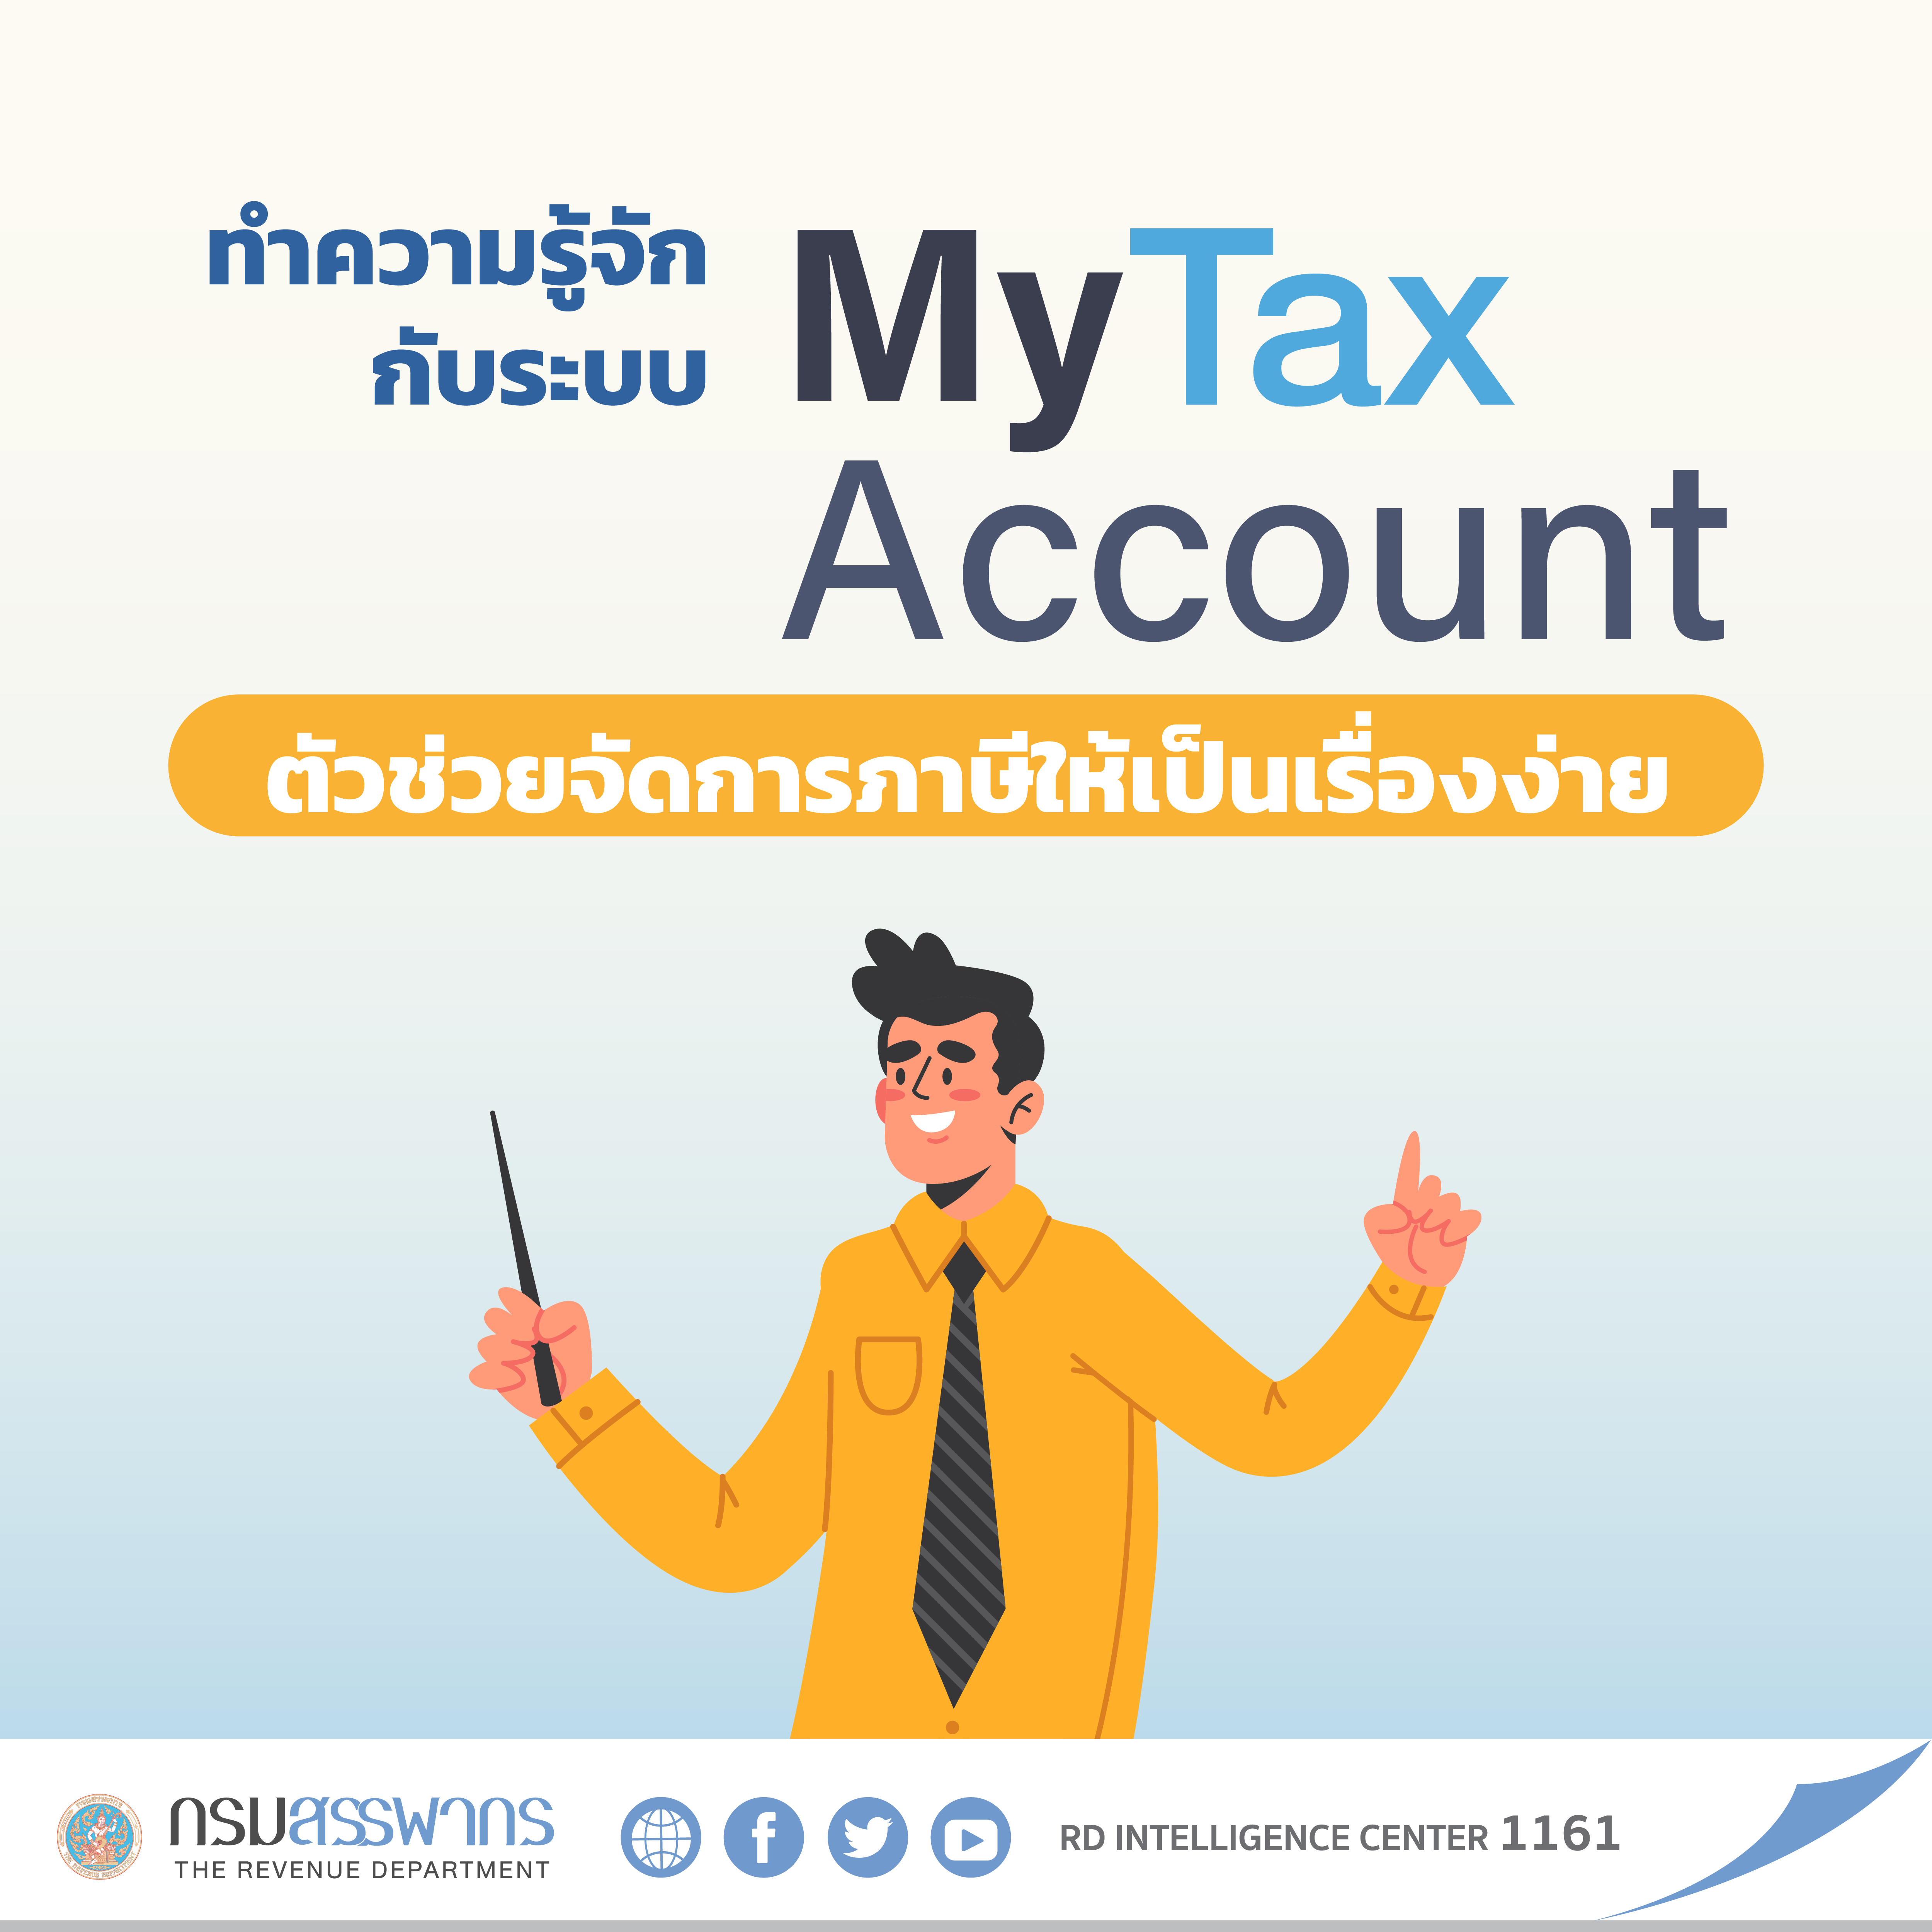 ทำความรู้จักกับระบบ My Tax Account ตัวช่วยจัดการภาษีให้เป็นเรื่องง่าย